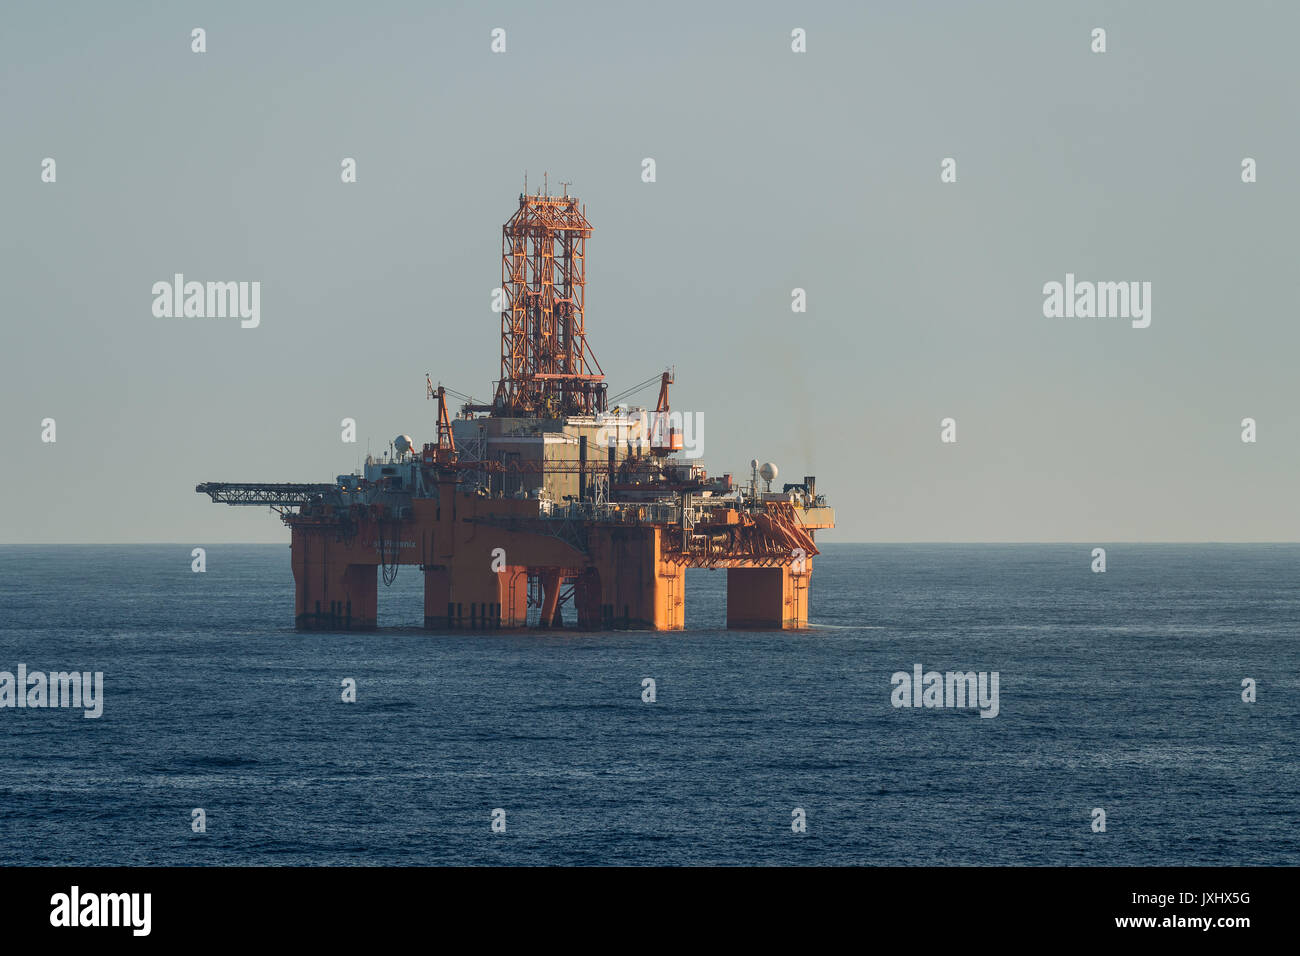 West Phoenix oil rig, l'estrazione di olio, Mare del Nord Foto Stock